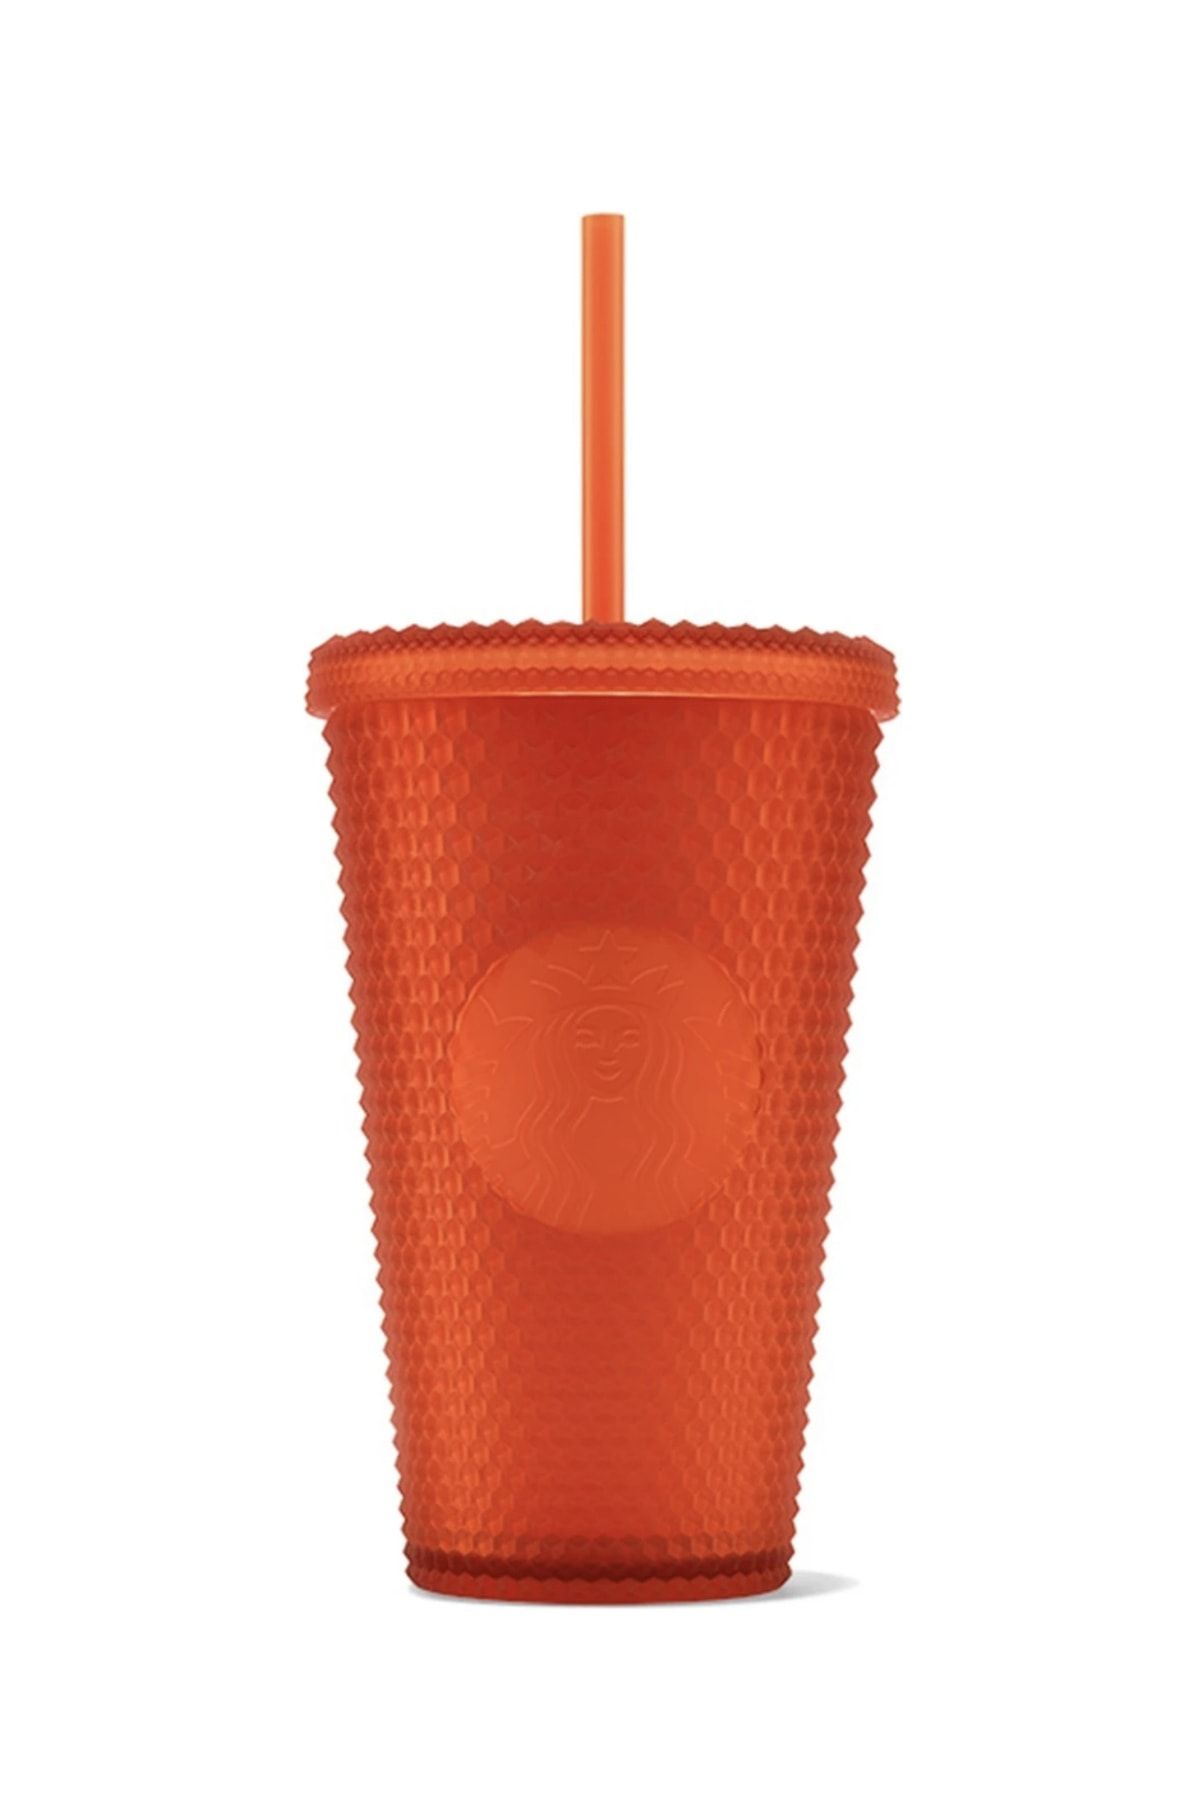 Starbucks ® Plastik Soğuk Içecek Bardağı - Turuncu - 473 ml -